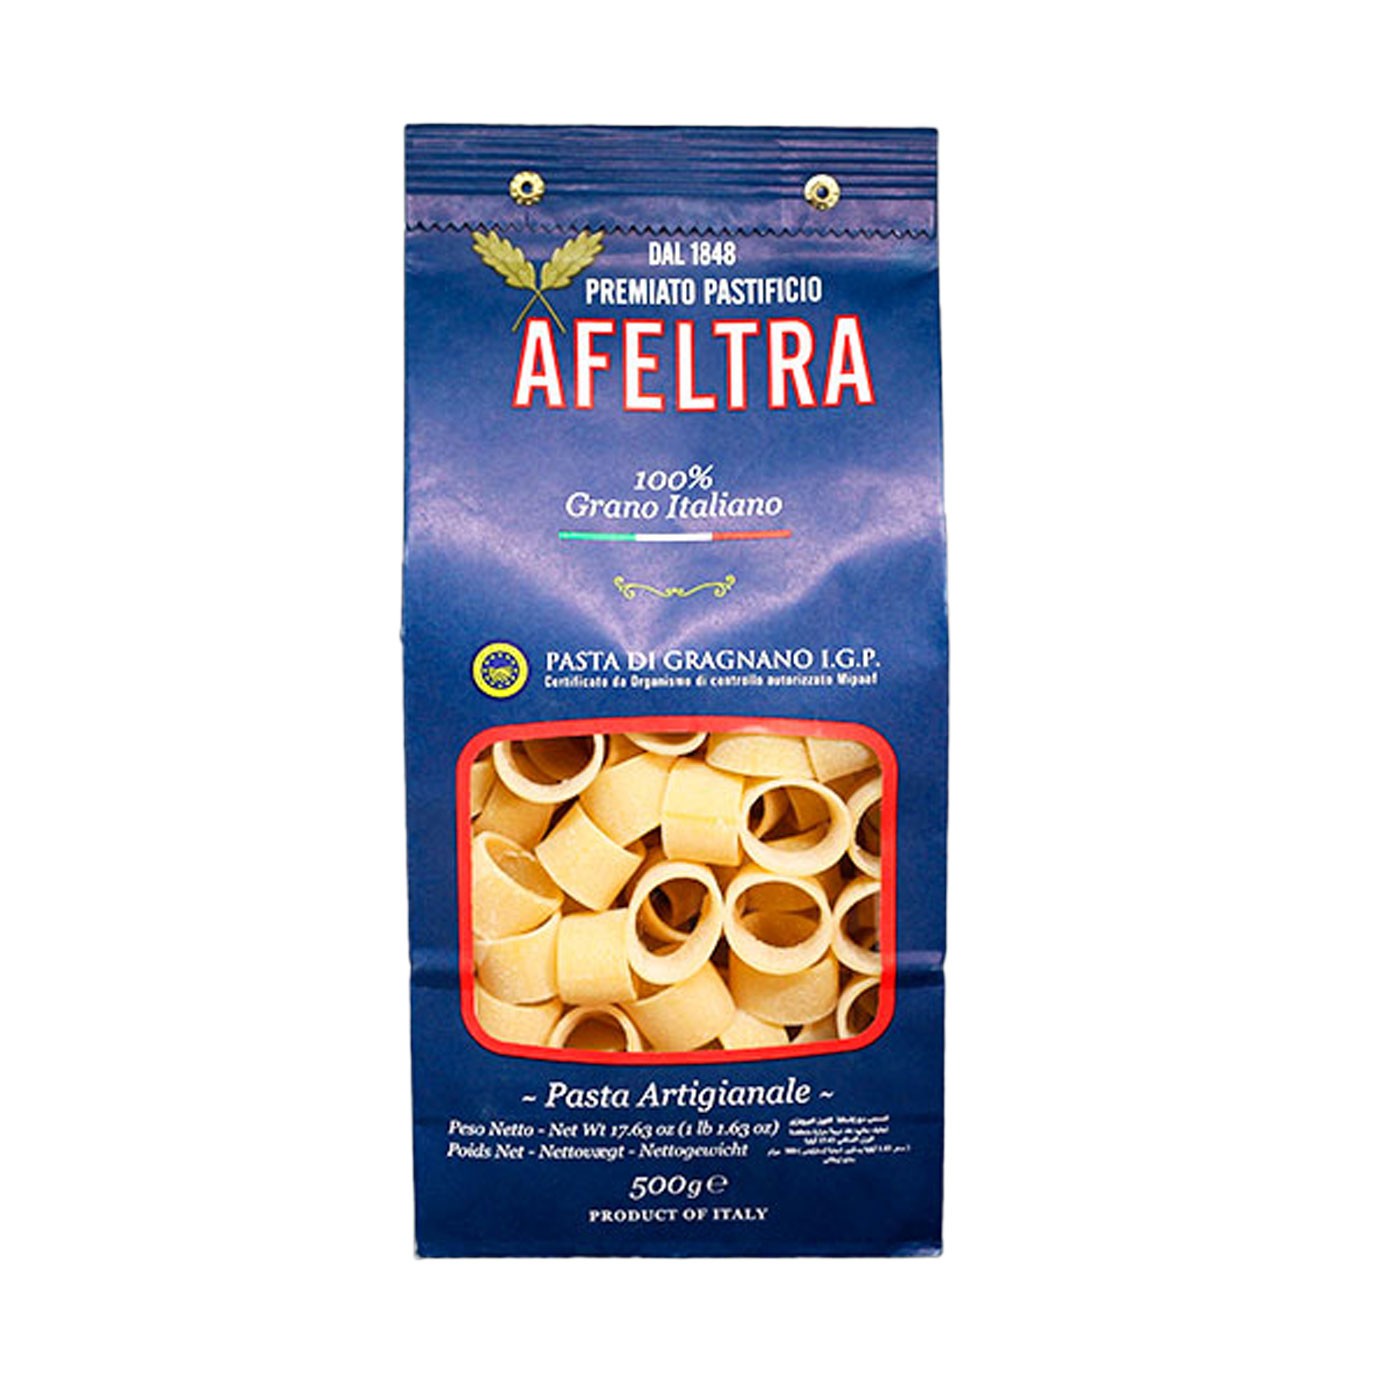 100% Italian Grain Calamari Pasta 17.6 oz - Afeltra